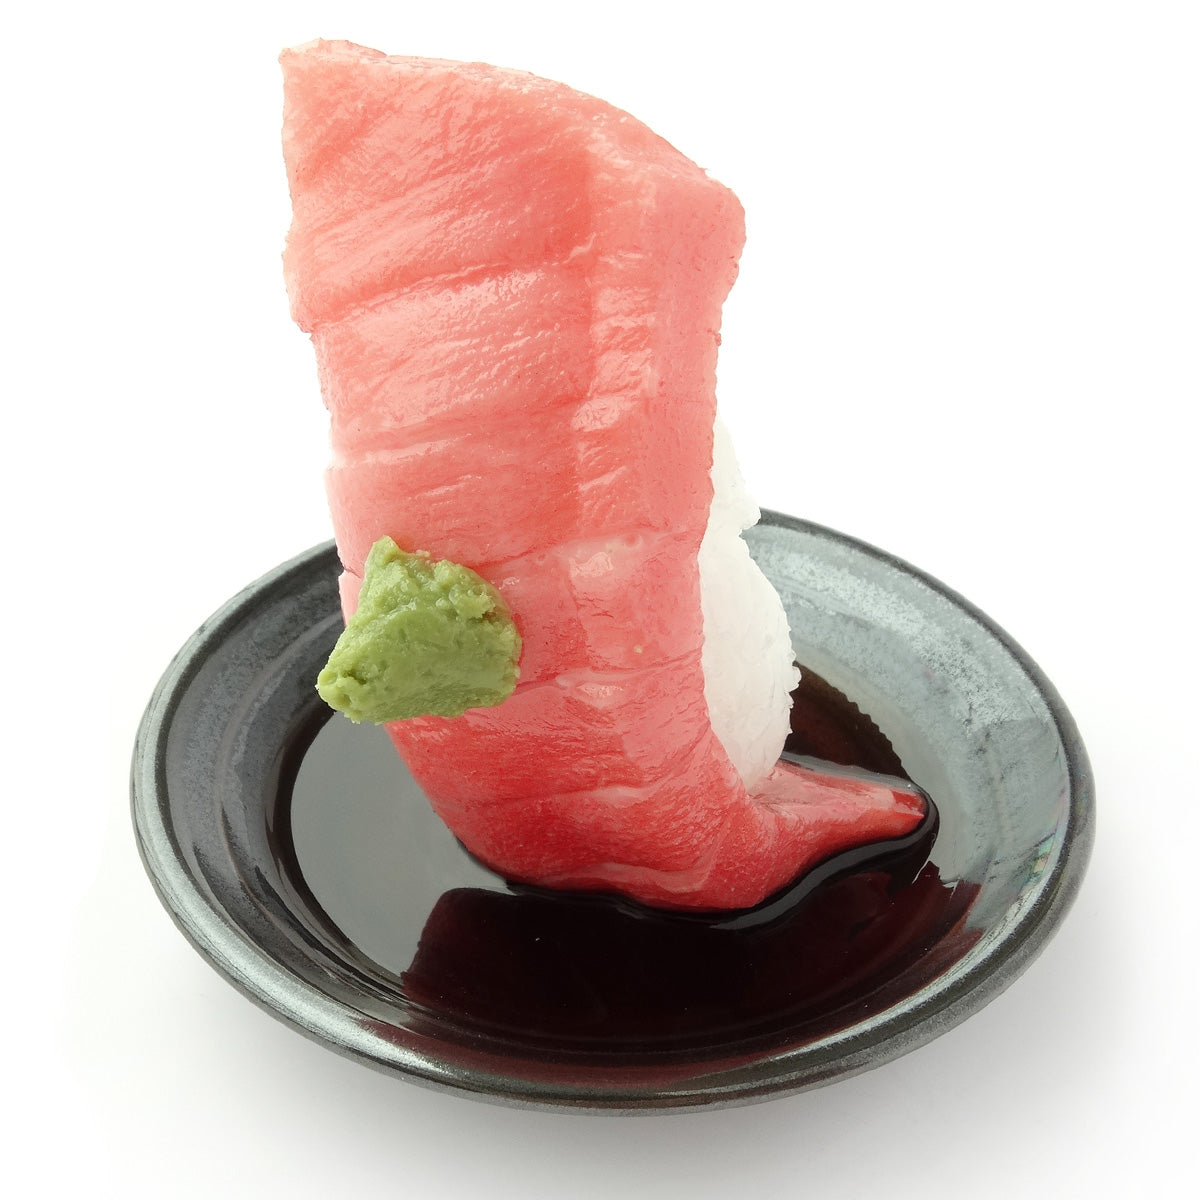 これは元祖食品サンプル屋の「つまみ寿司 中トロ」の商品画像です。